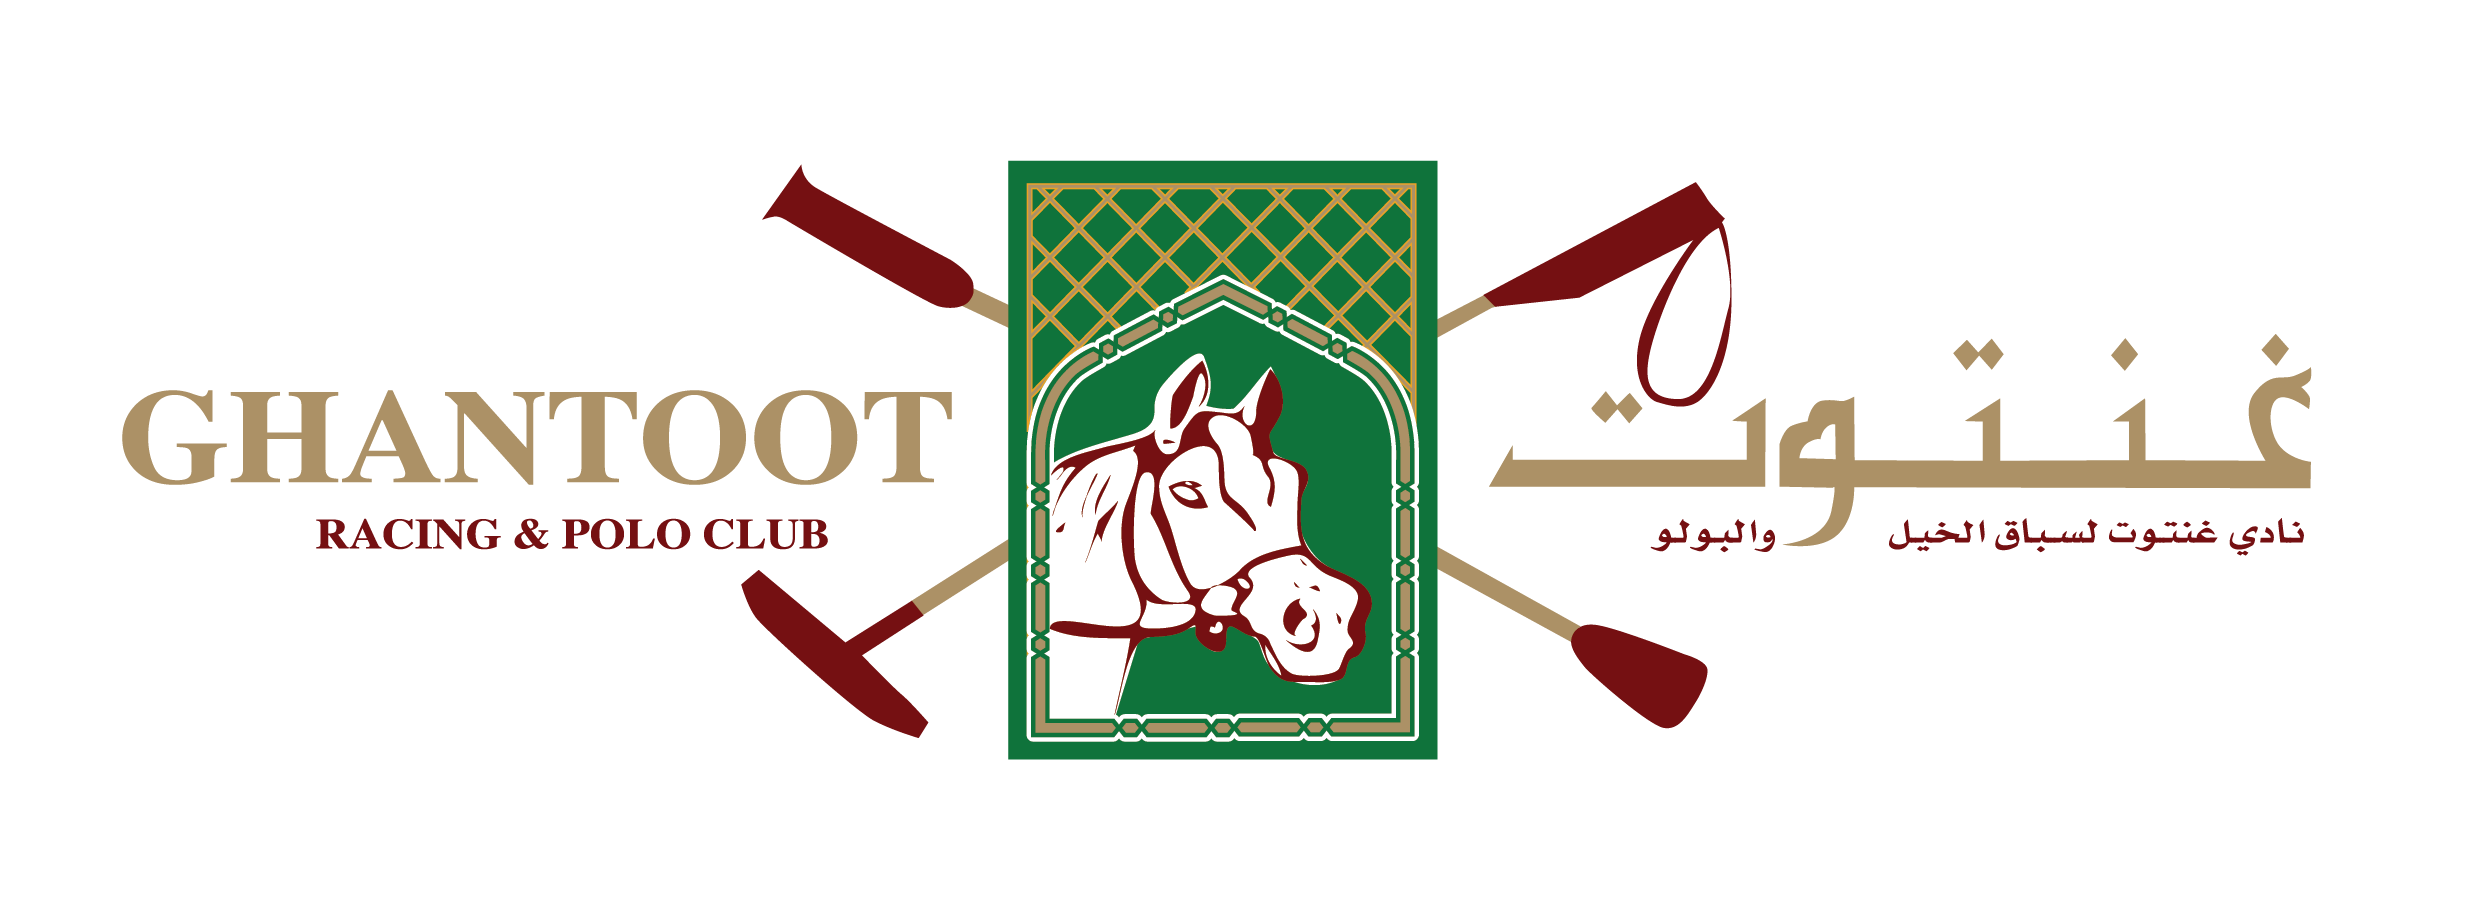 Ghantoot Racing & Polo Club